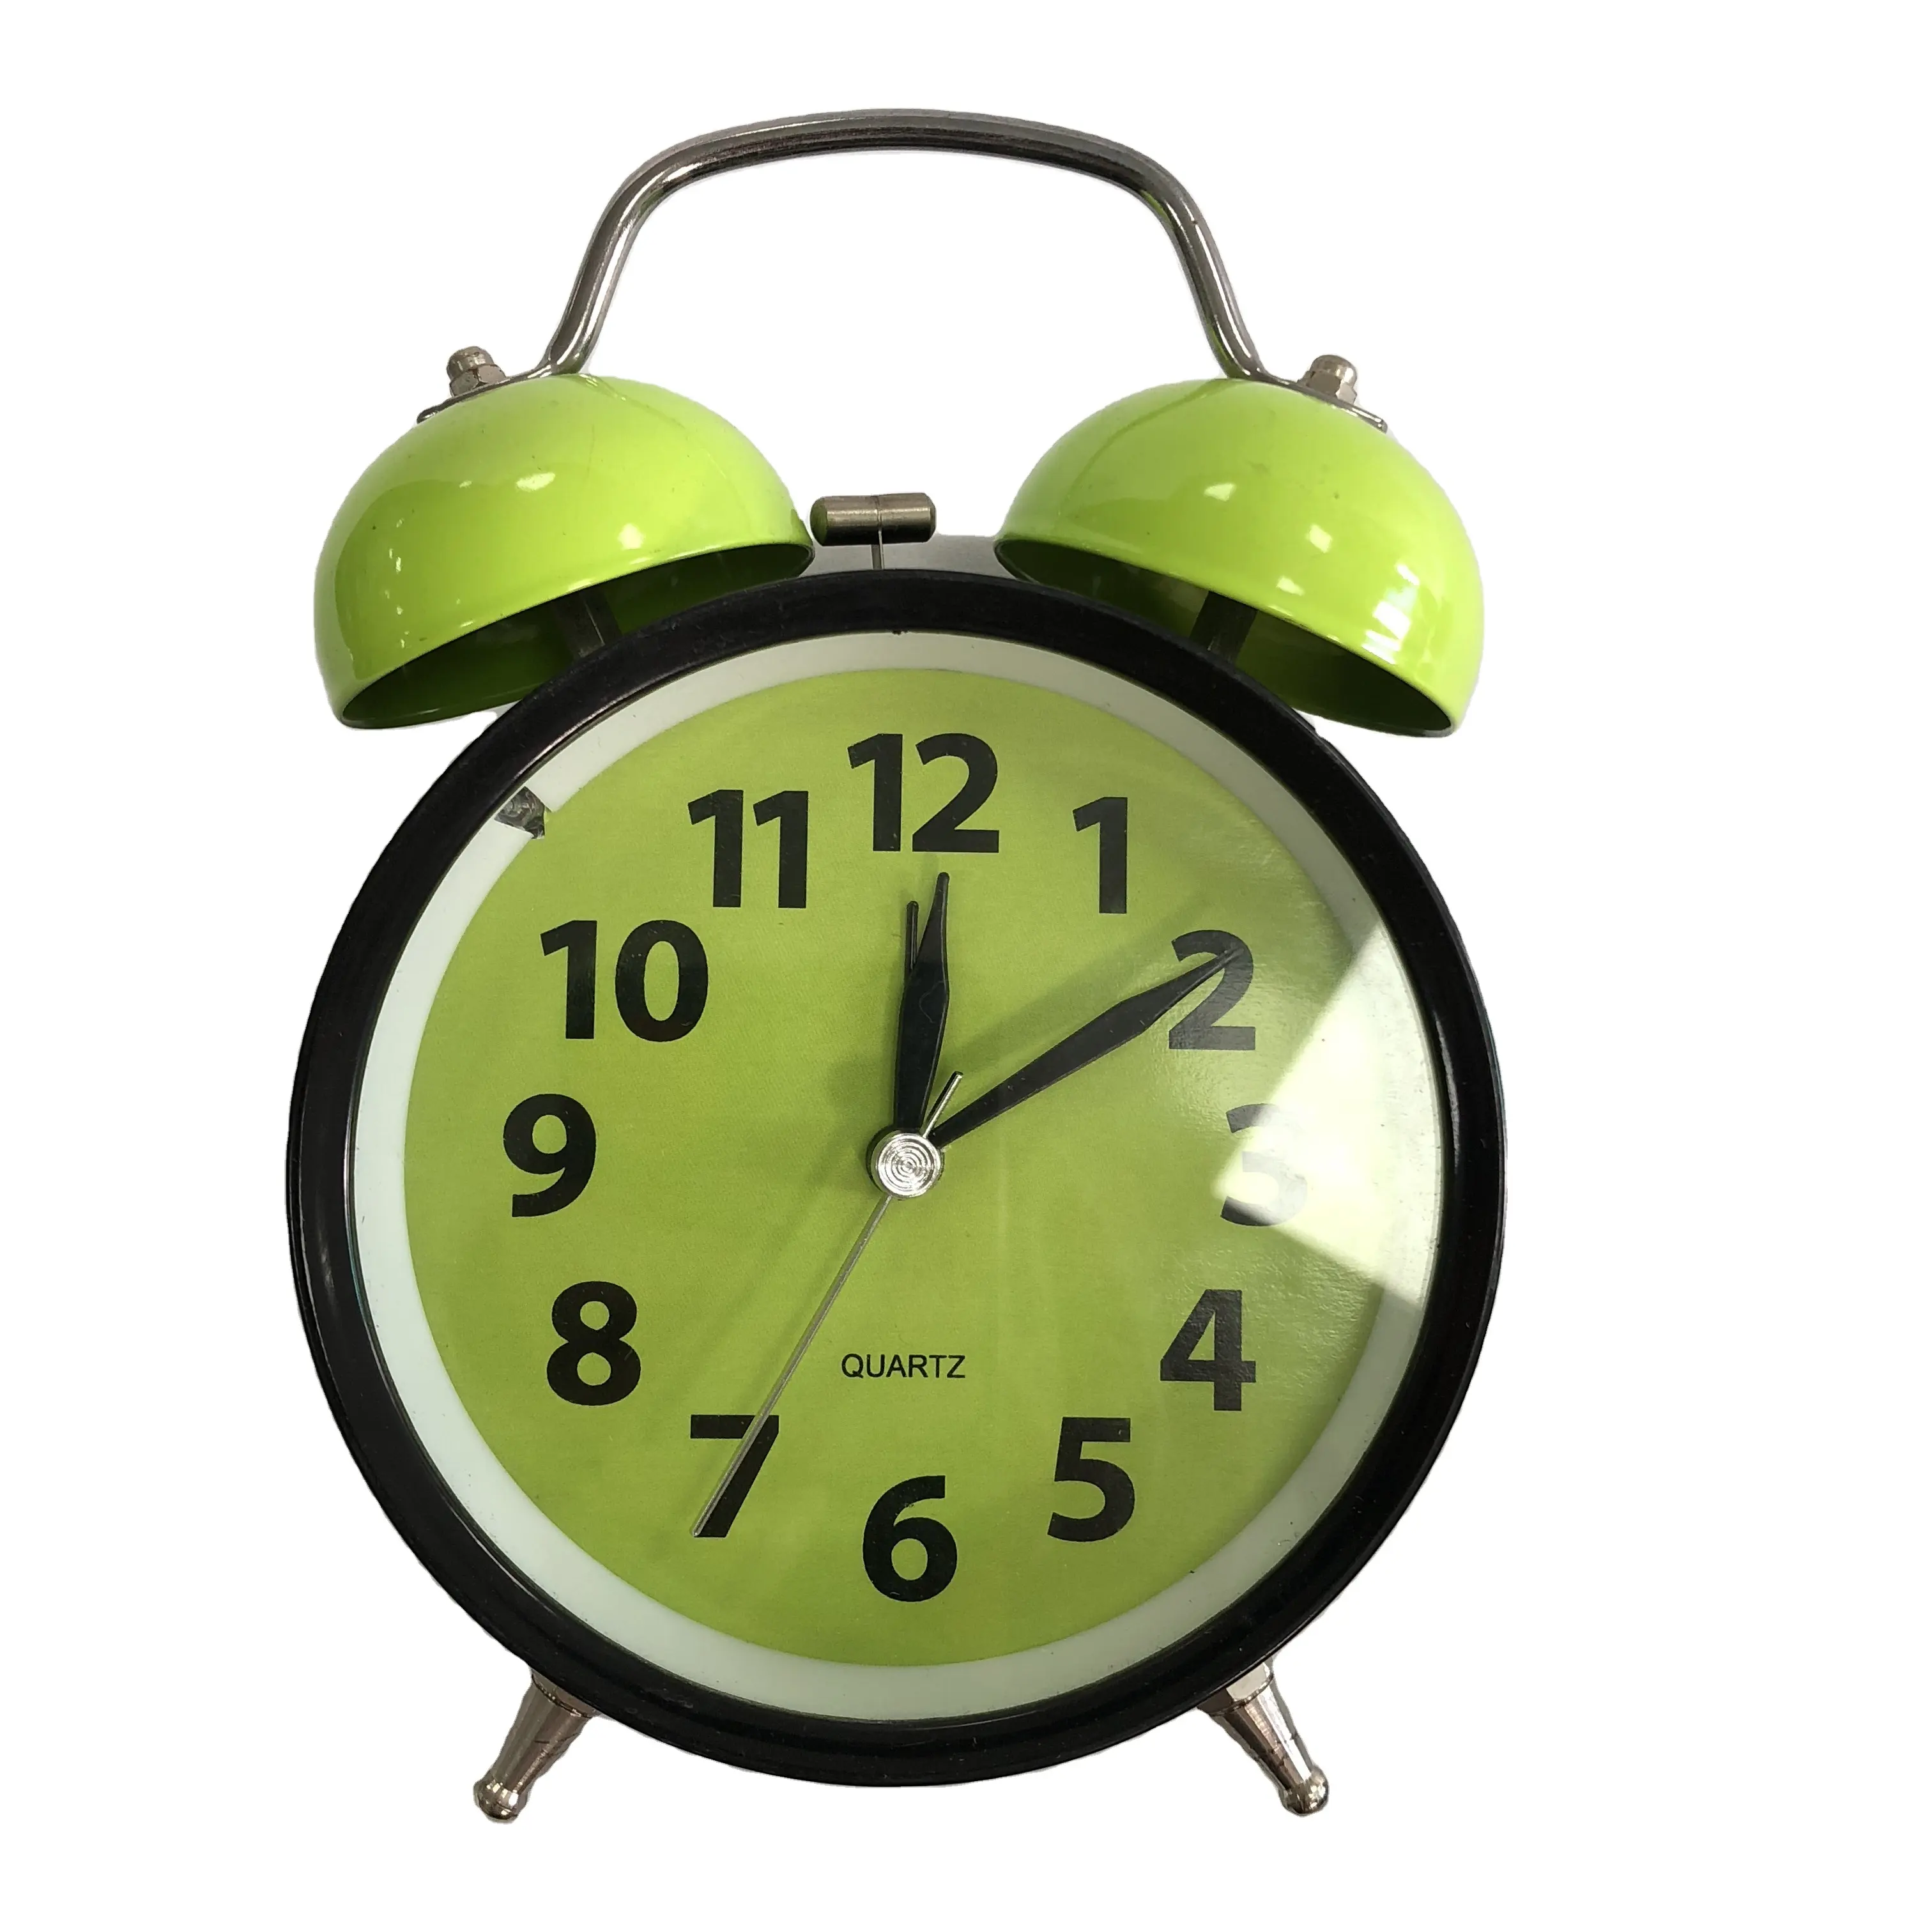 Relógio despertador campainha clássico, 17cm